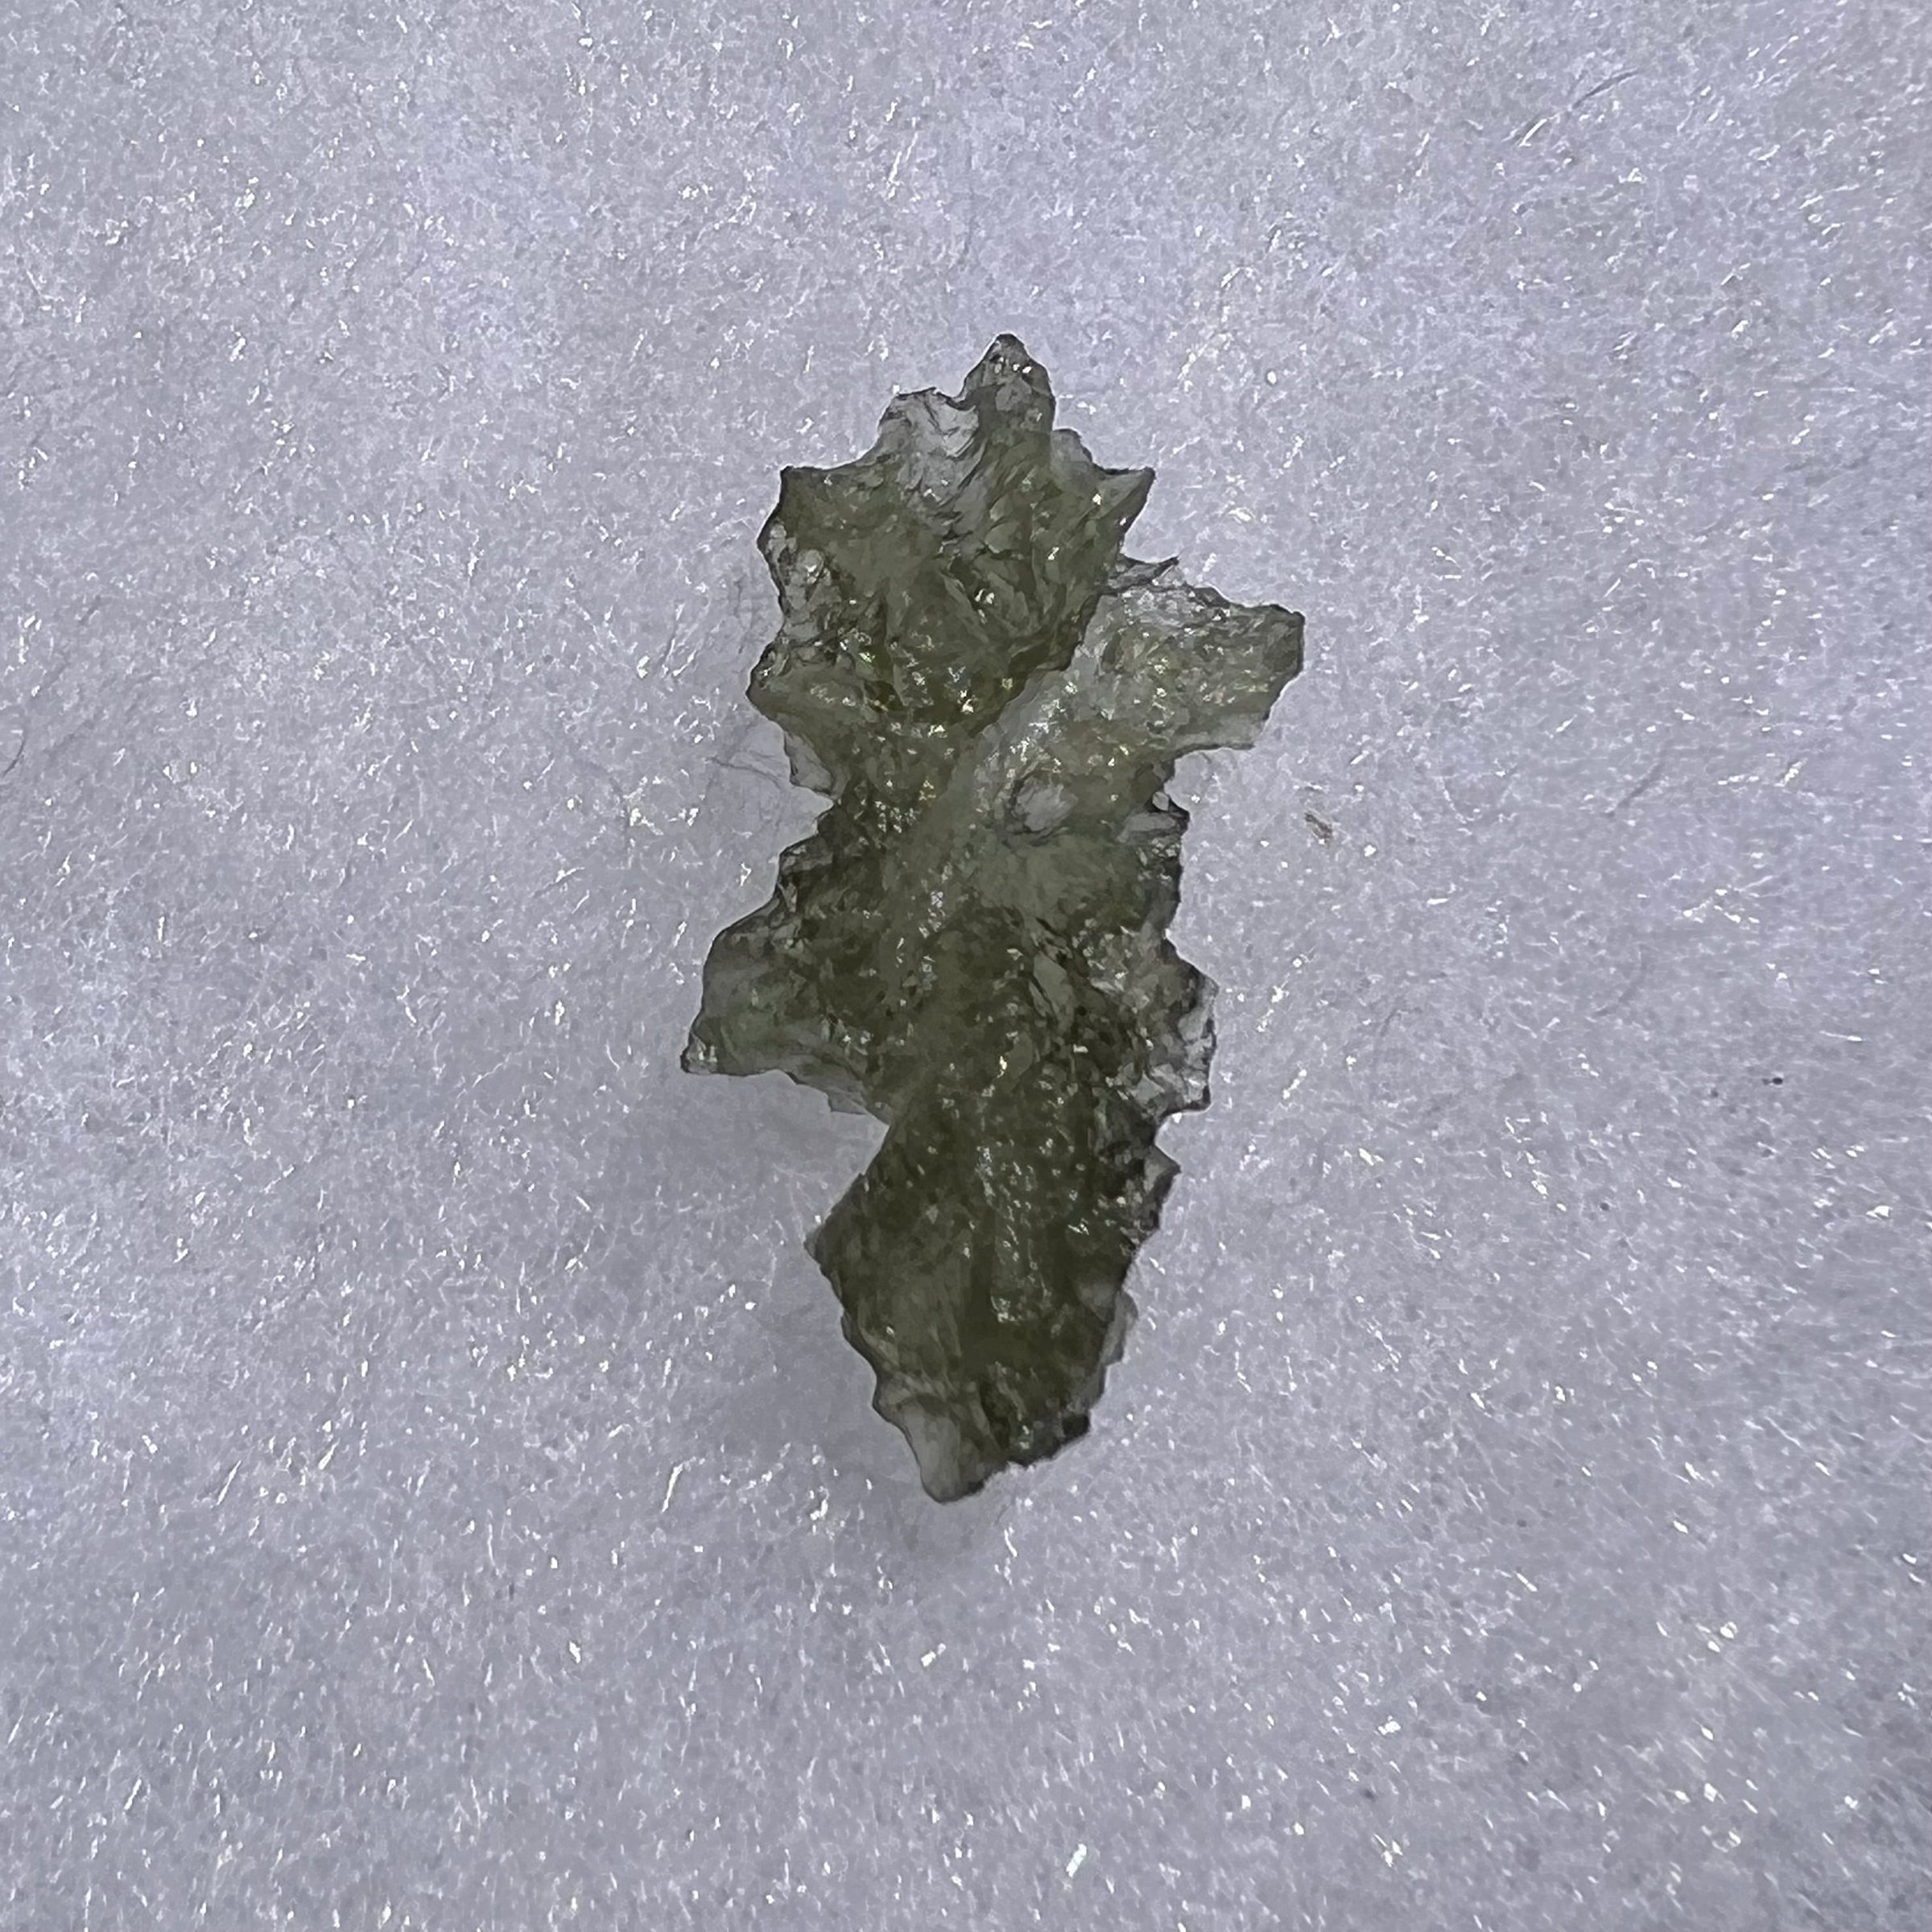 Besednice Moldavite 0.78 grams #428-Moldavite Life